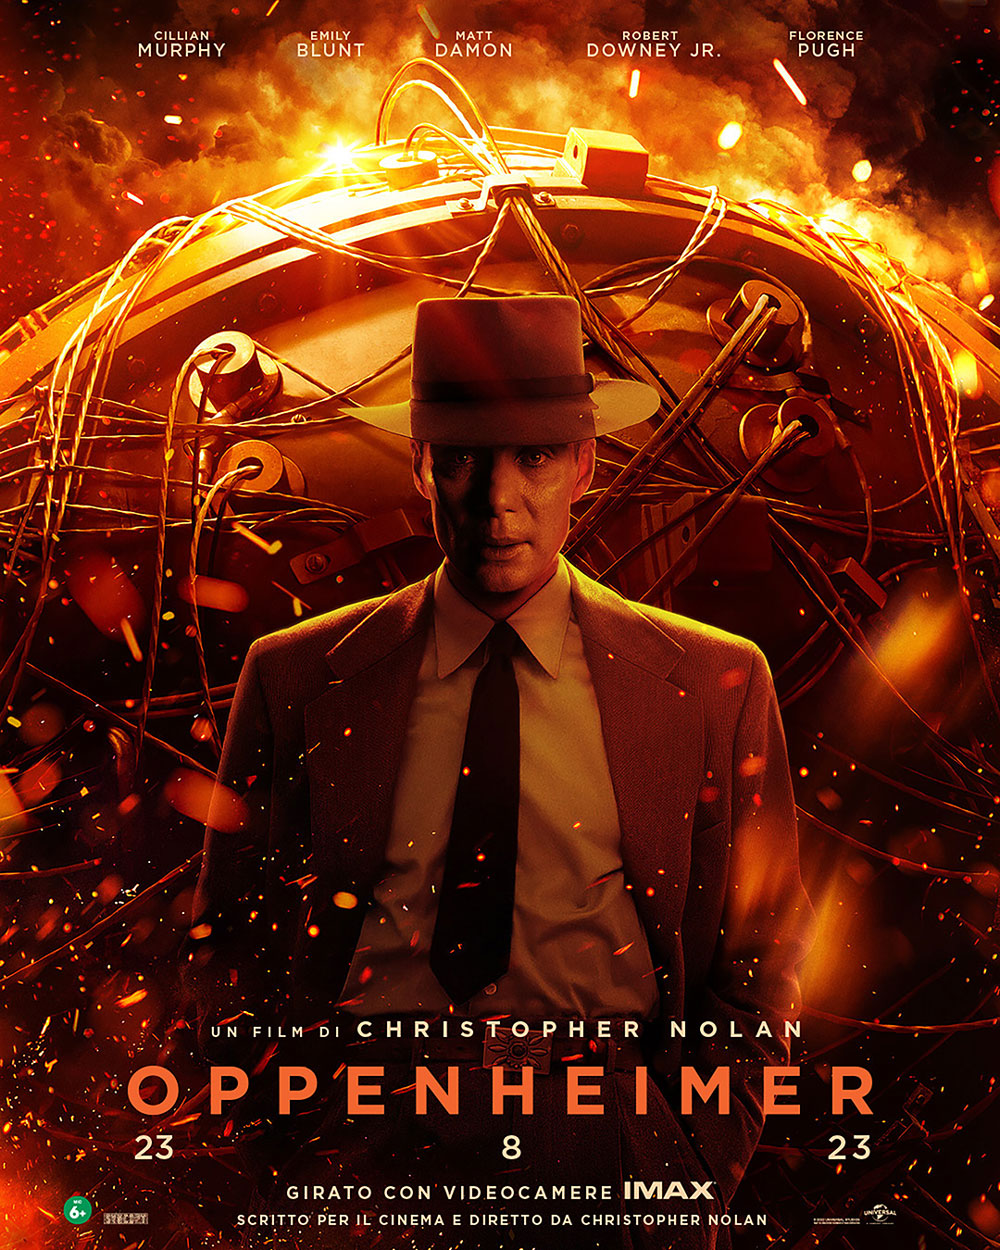 Al cinema Quattro Fontane di Roma “Oppenheimer” di Nolan in 70 mm